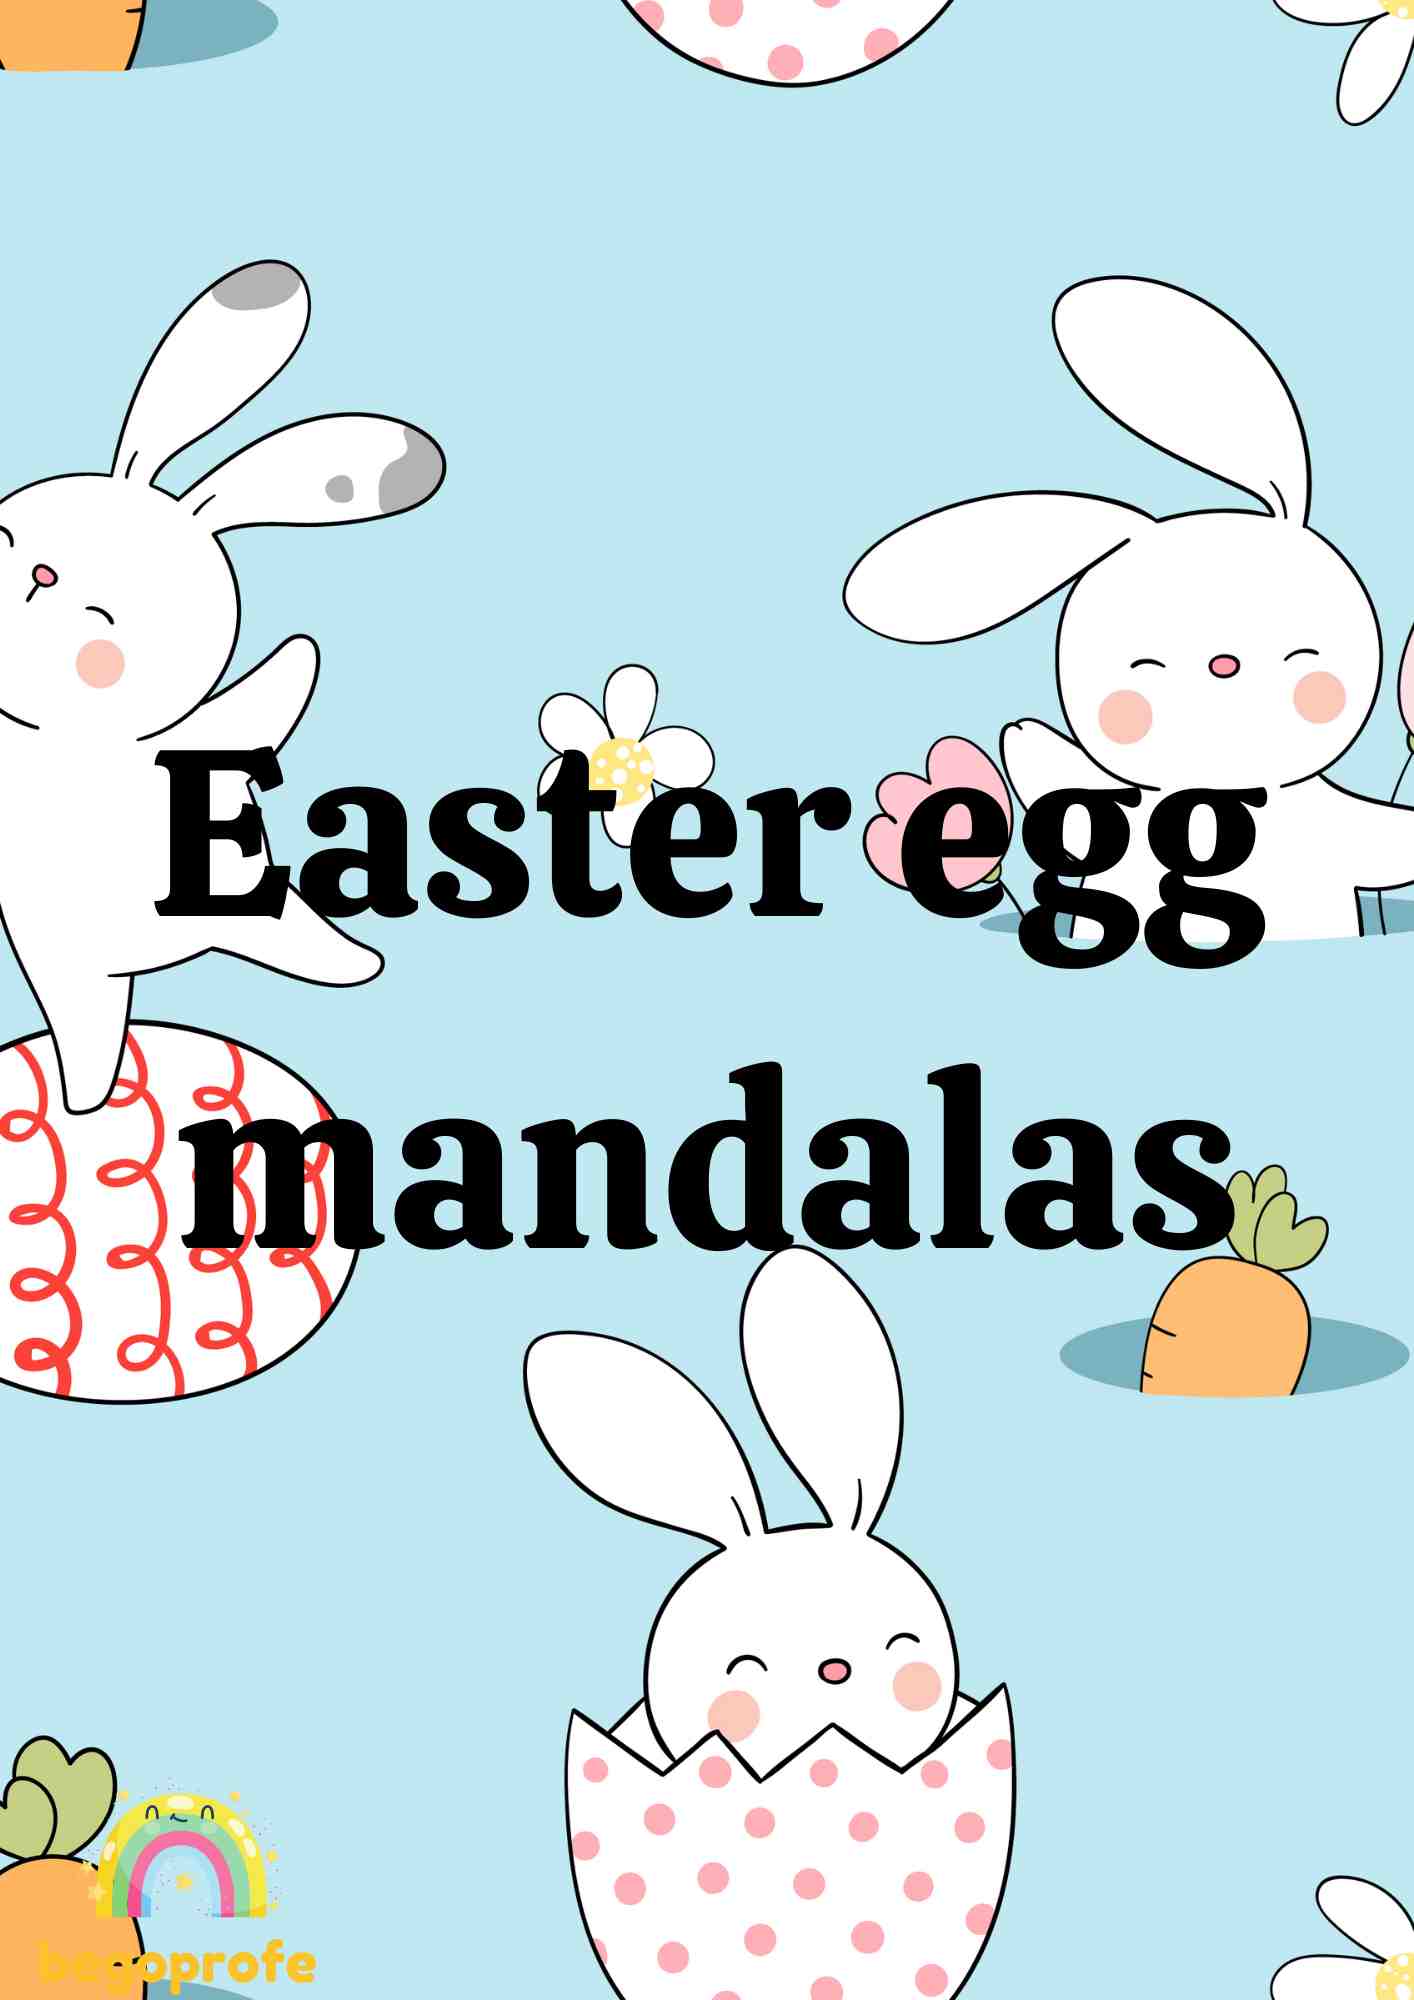 Easter egg mandalas - Mandalas huevo de Pascua